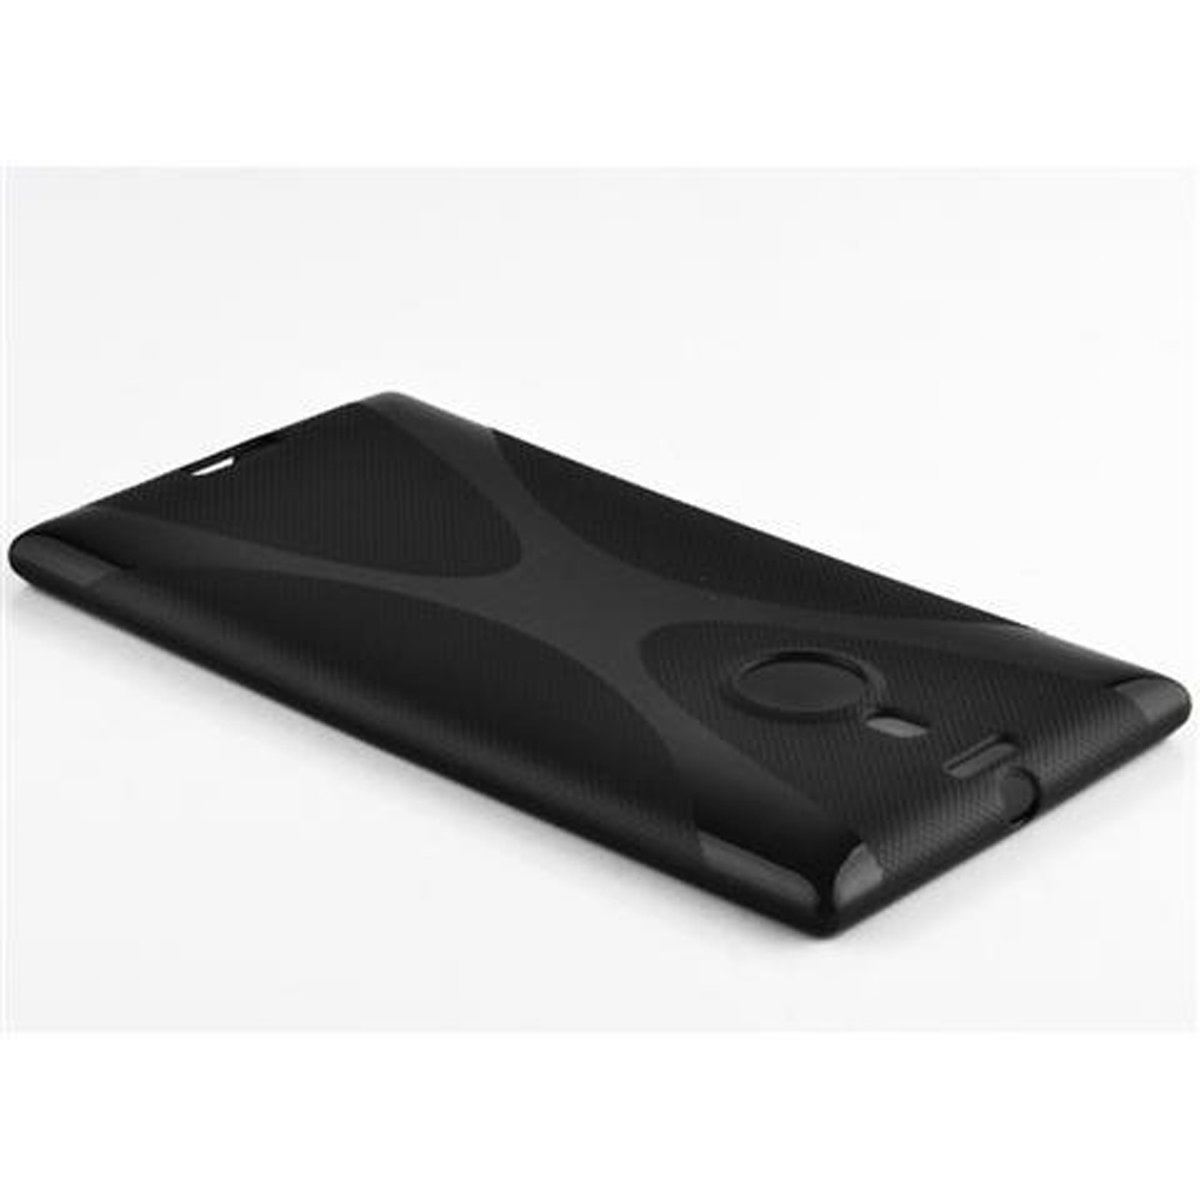 OXID Schutzhülle, Nokia, 925, SCHWARZ X-Line CADORABO TPU Lumia Backcover,